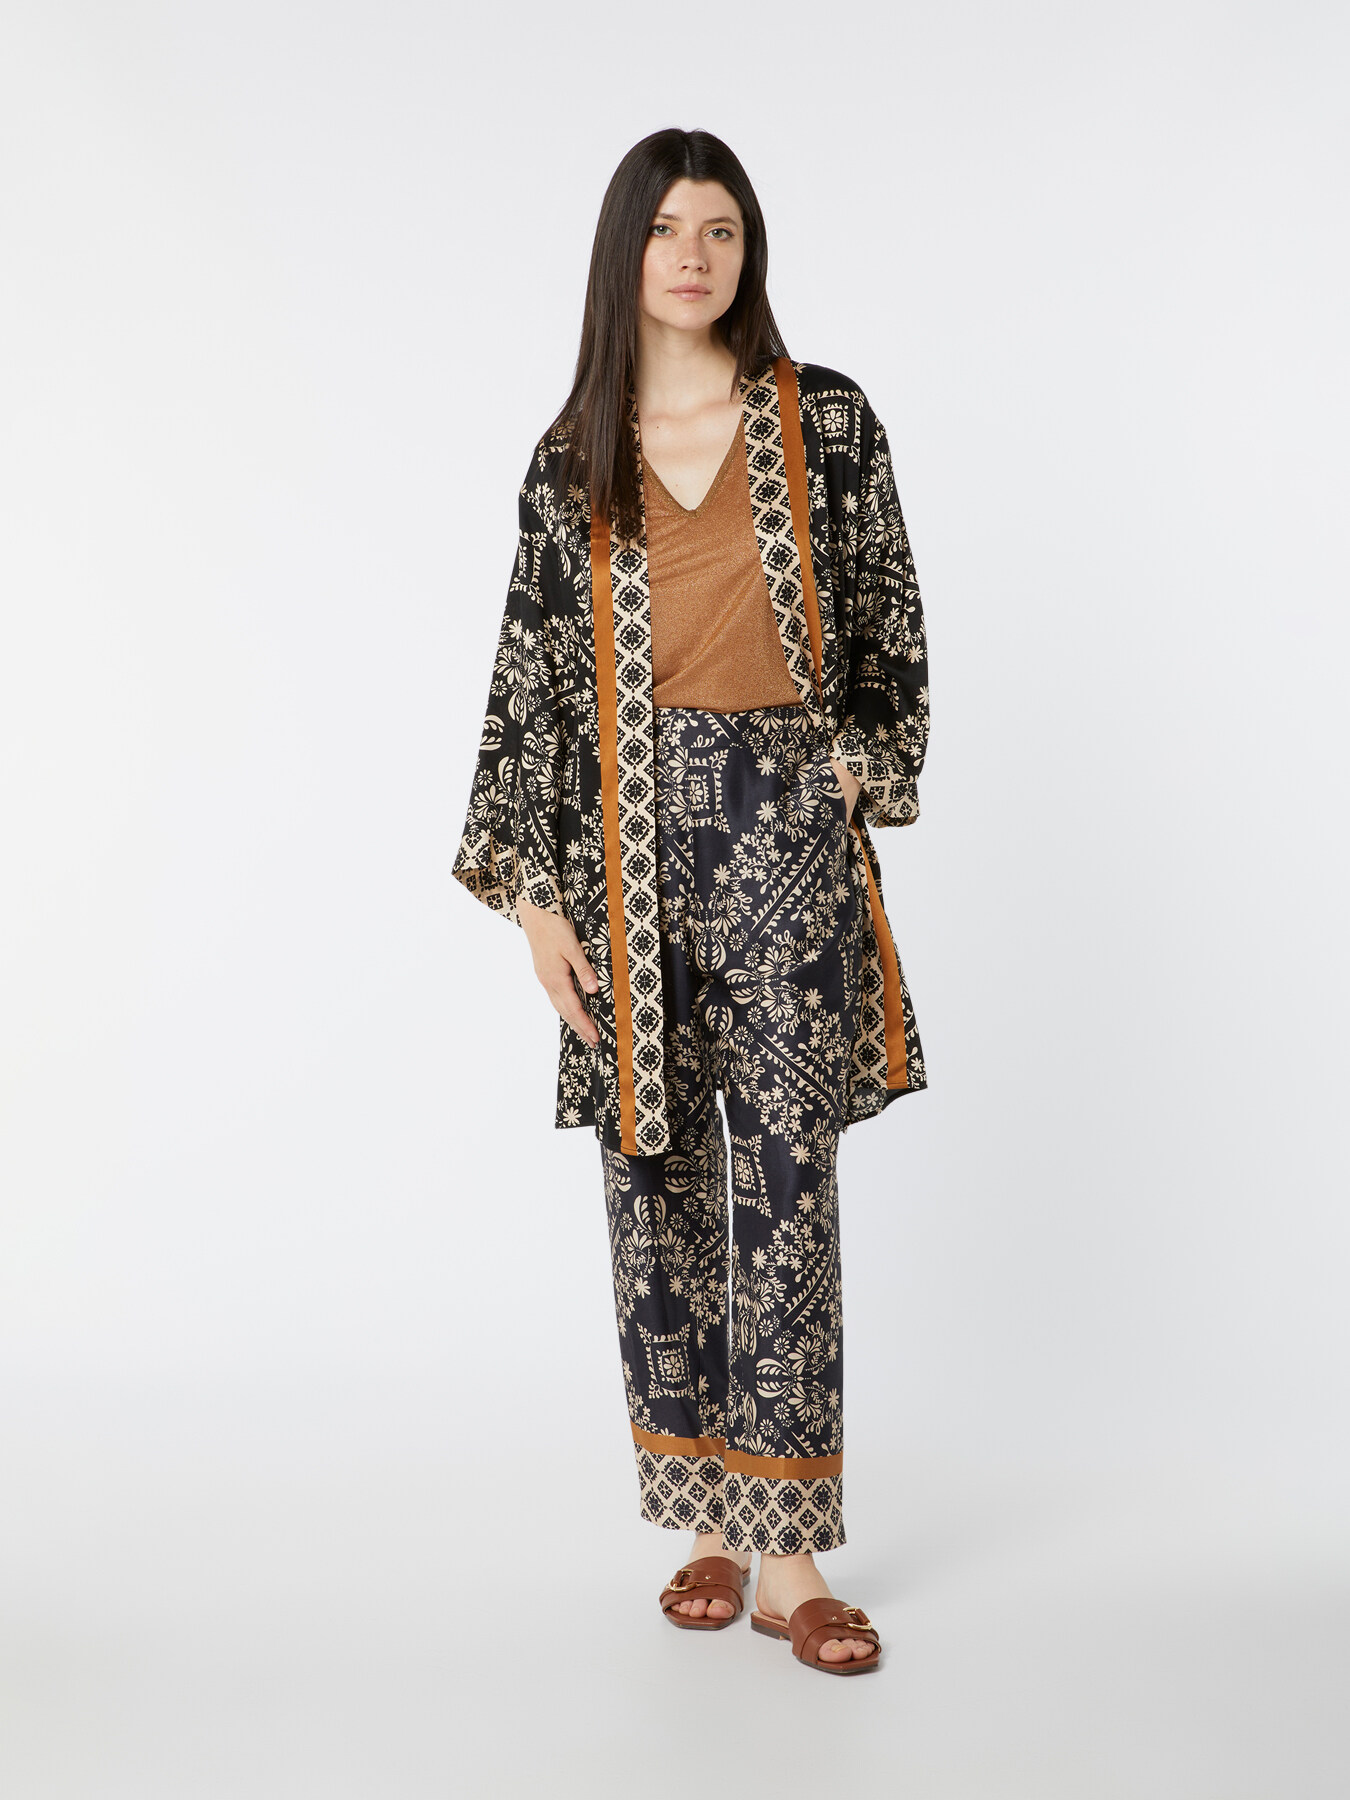 Nero M sconto 72% MODA DONNA Camicie & T-shirt Kimono Combinato Primark Kimono 